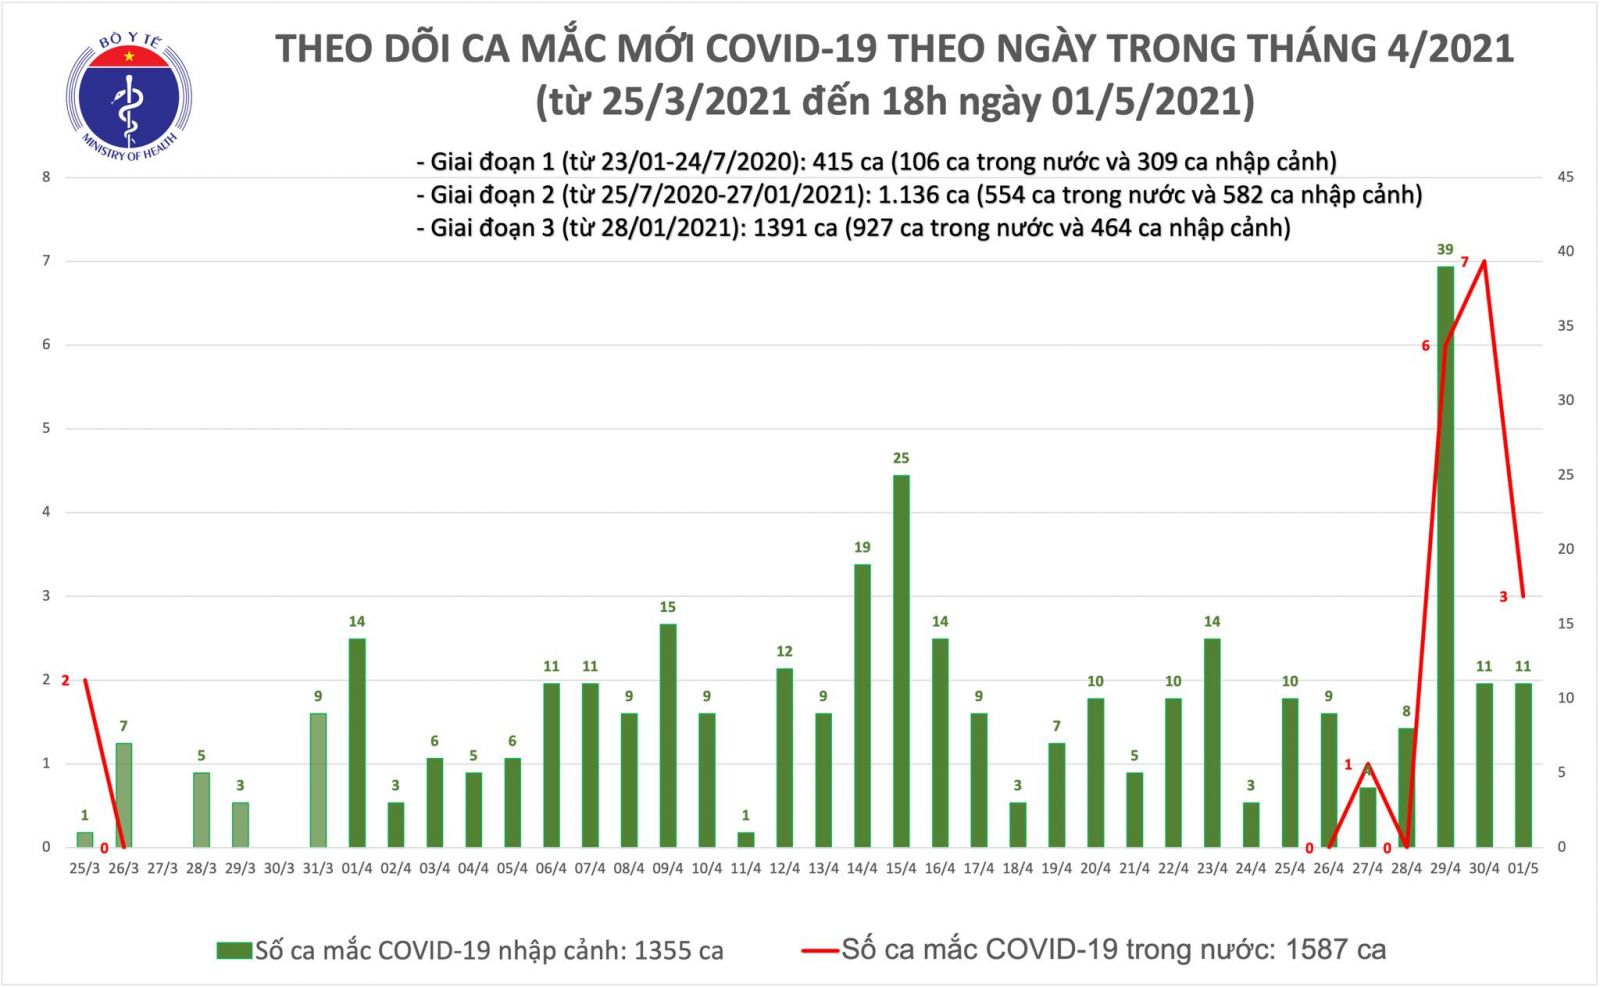 Chiều 1/5: Bộ Y tế công bố 14 ca mắc COVID-19, có 3 ca trong nước ở Hà Nam